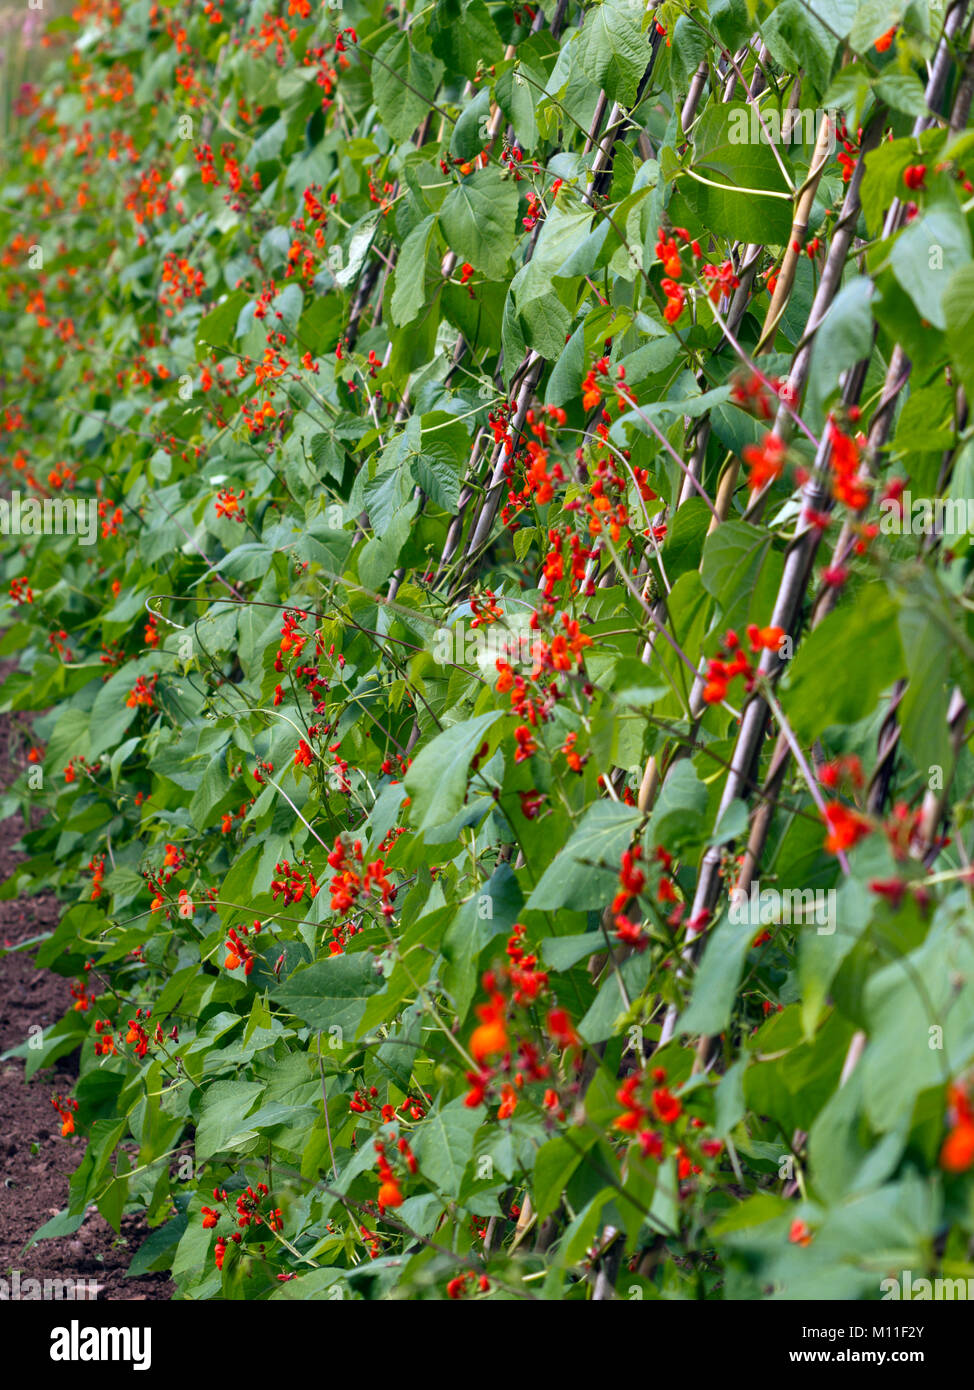 Reichlich roten Blüte auf eine Reihe von runner bean Pflanzen. Geringe Tiefenschärfe. Stockfoto